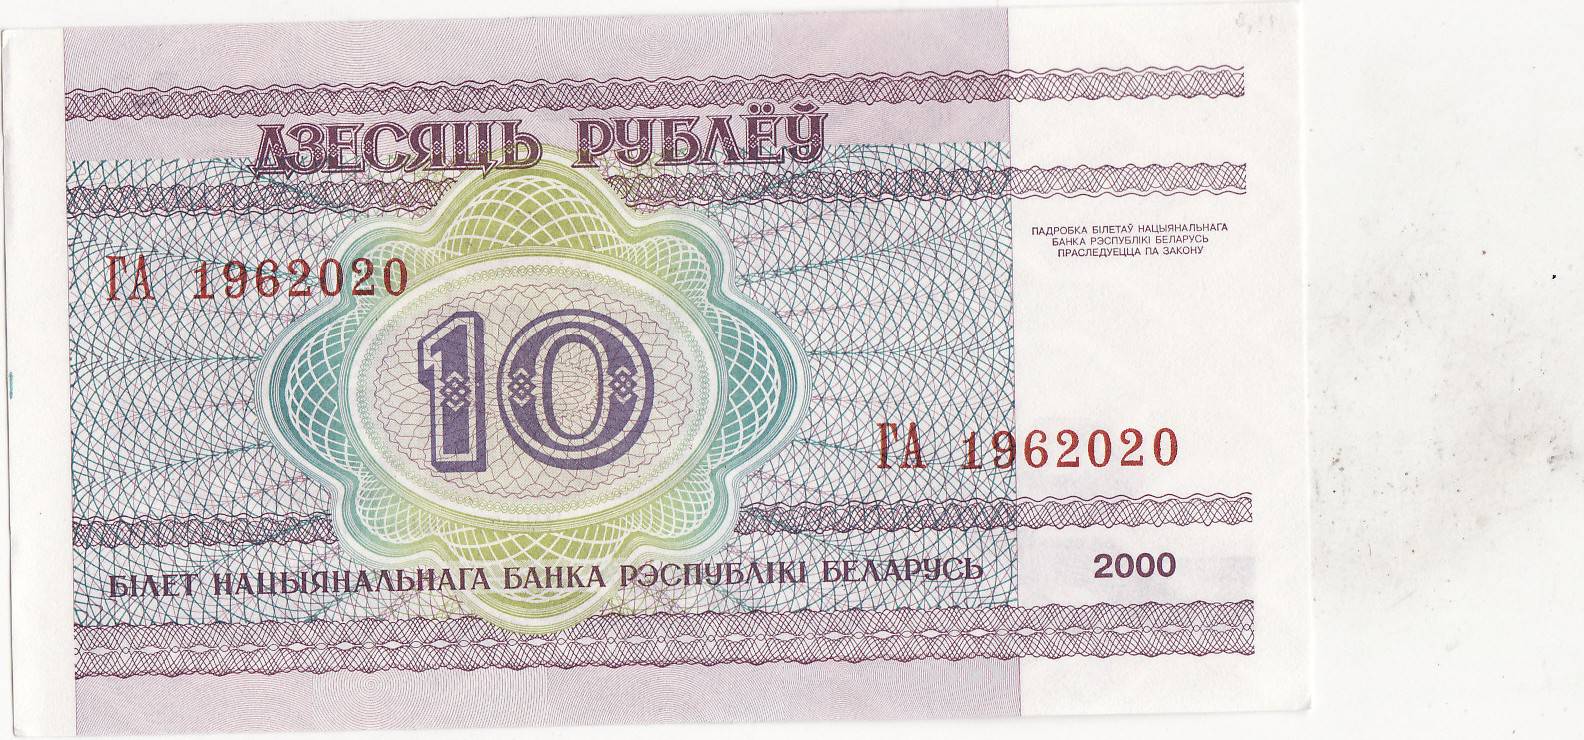 740 белорусских рублей. Бона Беларусь Белоруссия 10 рублей 2000. 10 Рублей 2000 Беларусь.